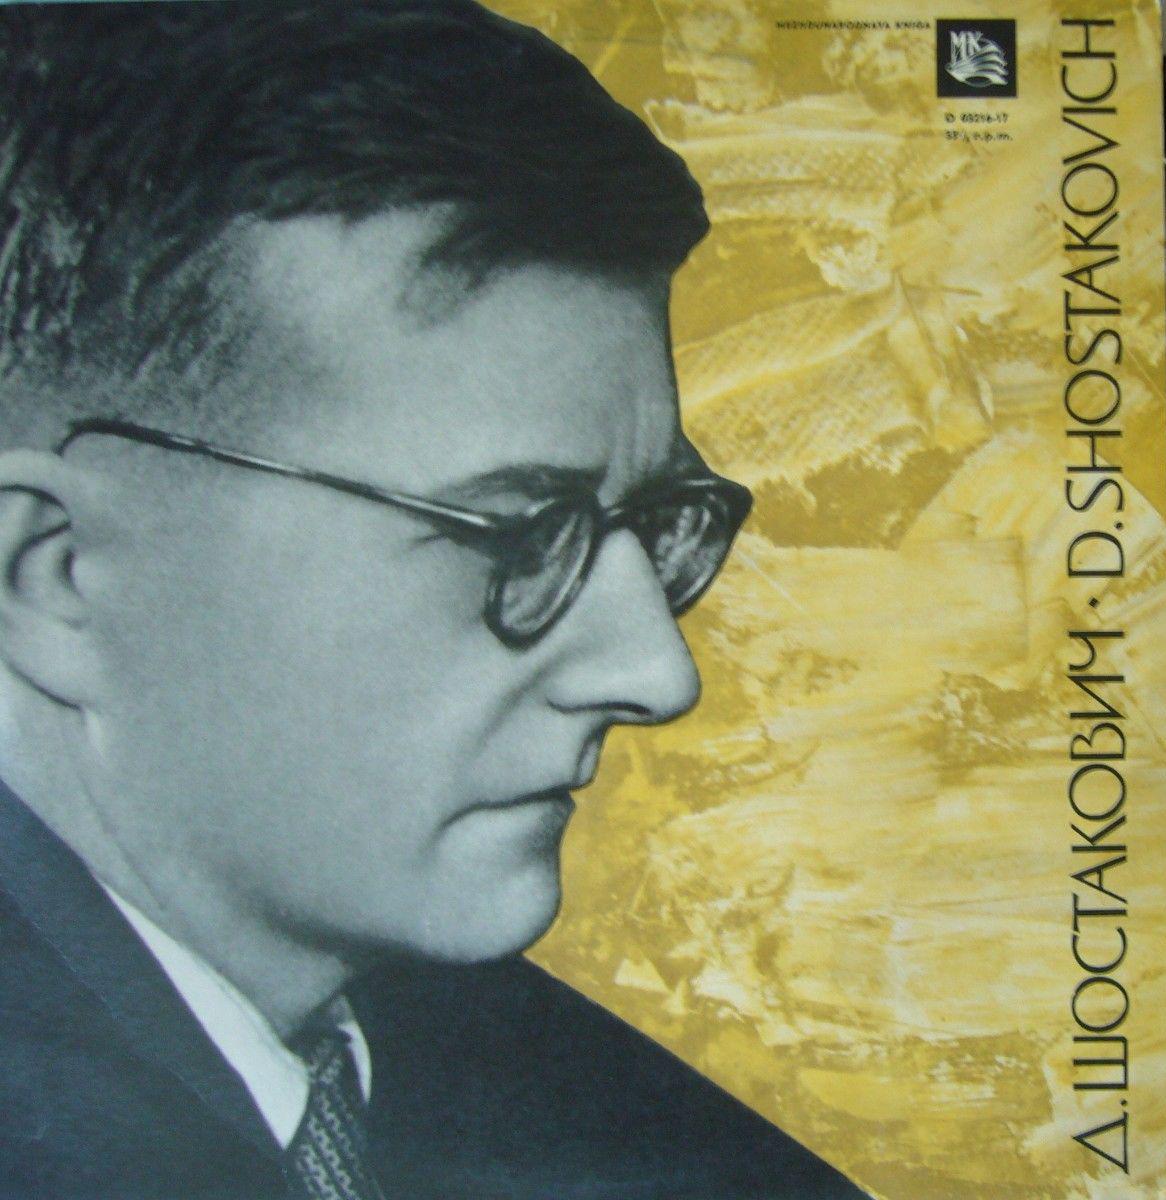 Д. Шостакович: Из еврейской нар. поэзии (вокальный цикл), Романсы на слова Е. Долматовского